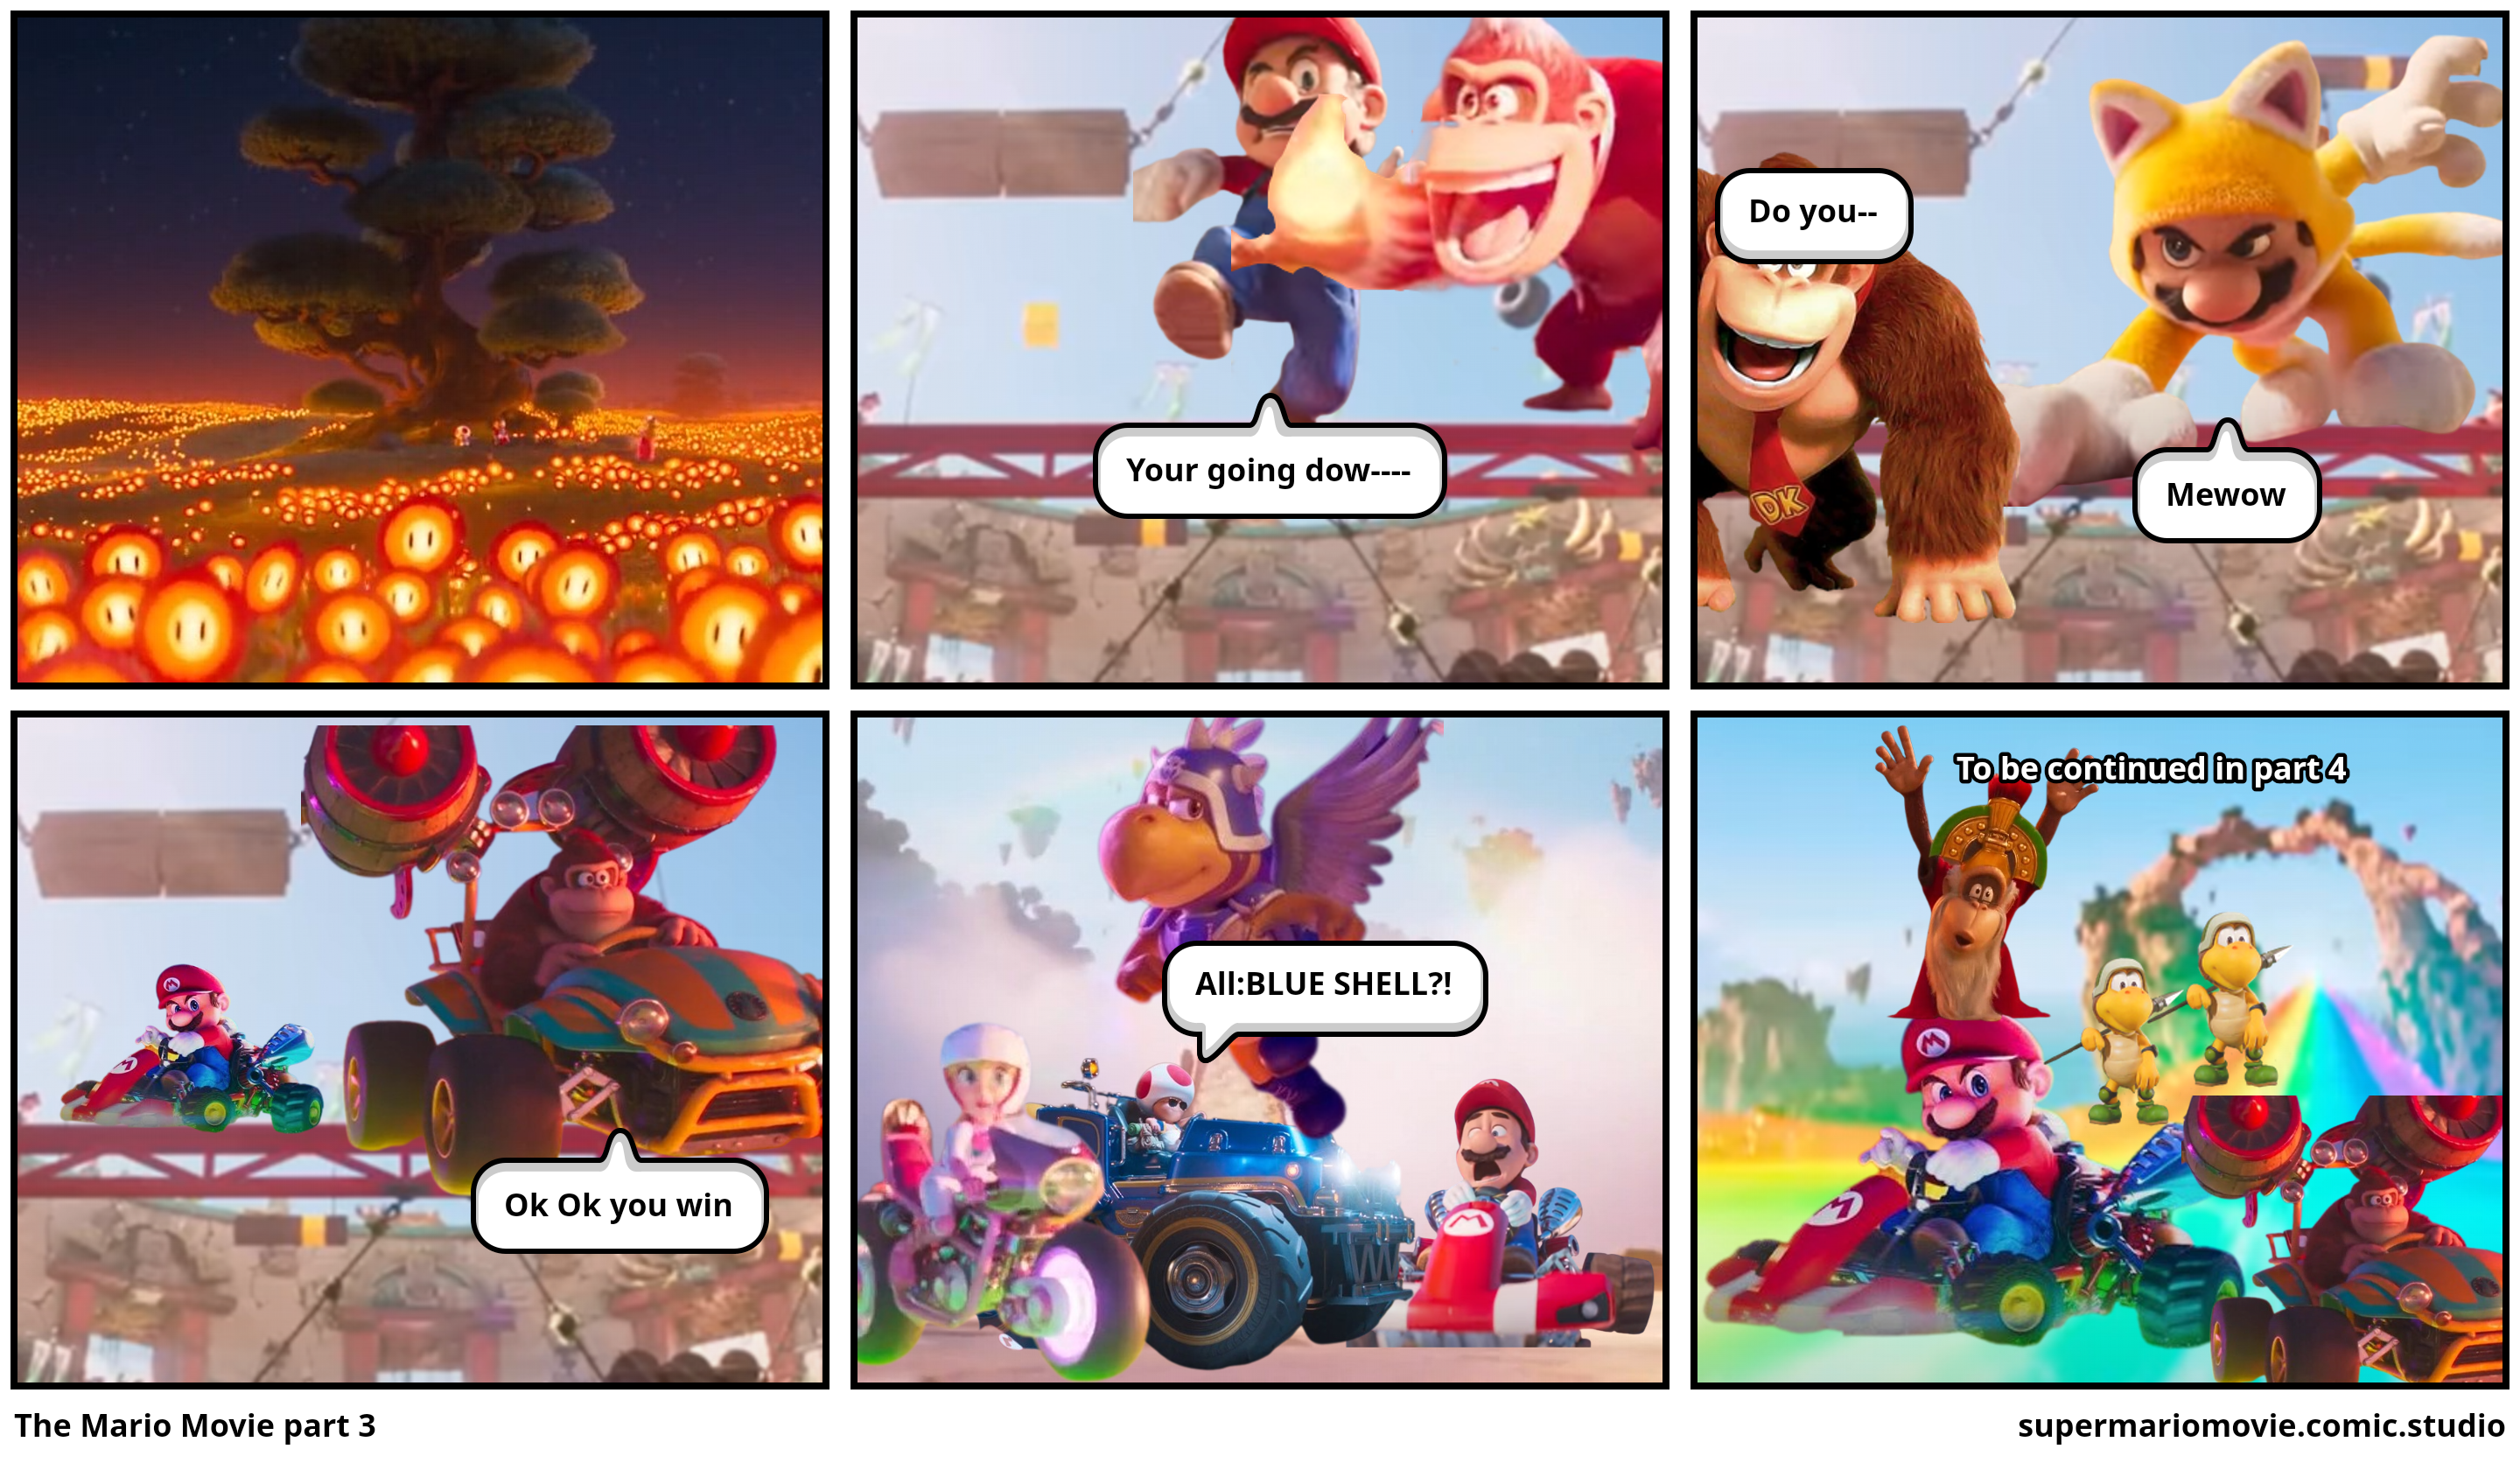 The Mario Movie part 3